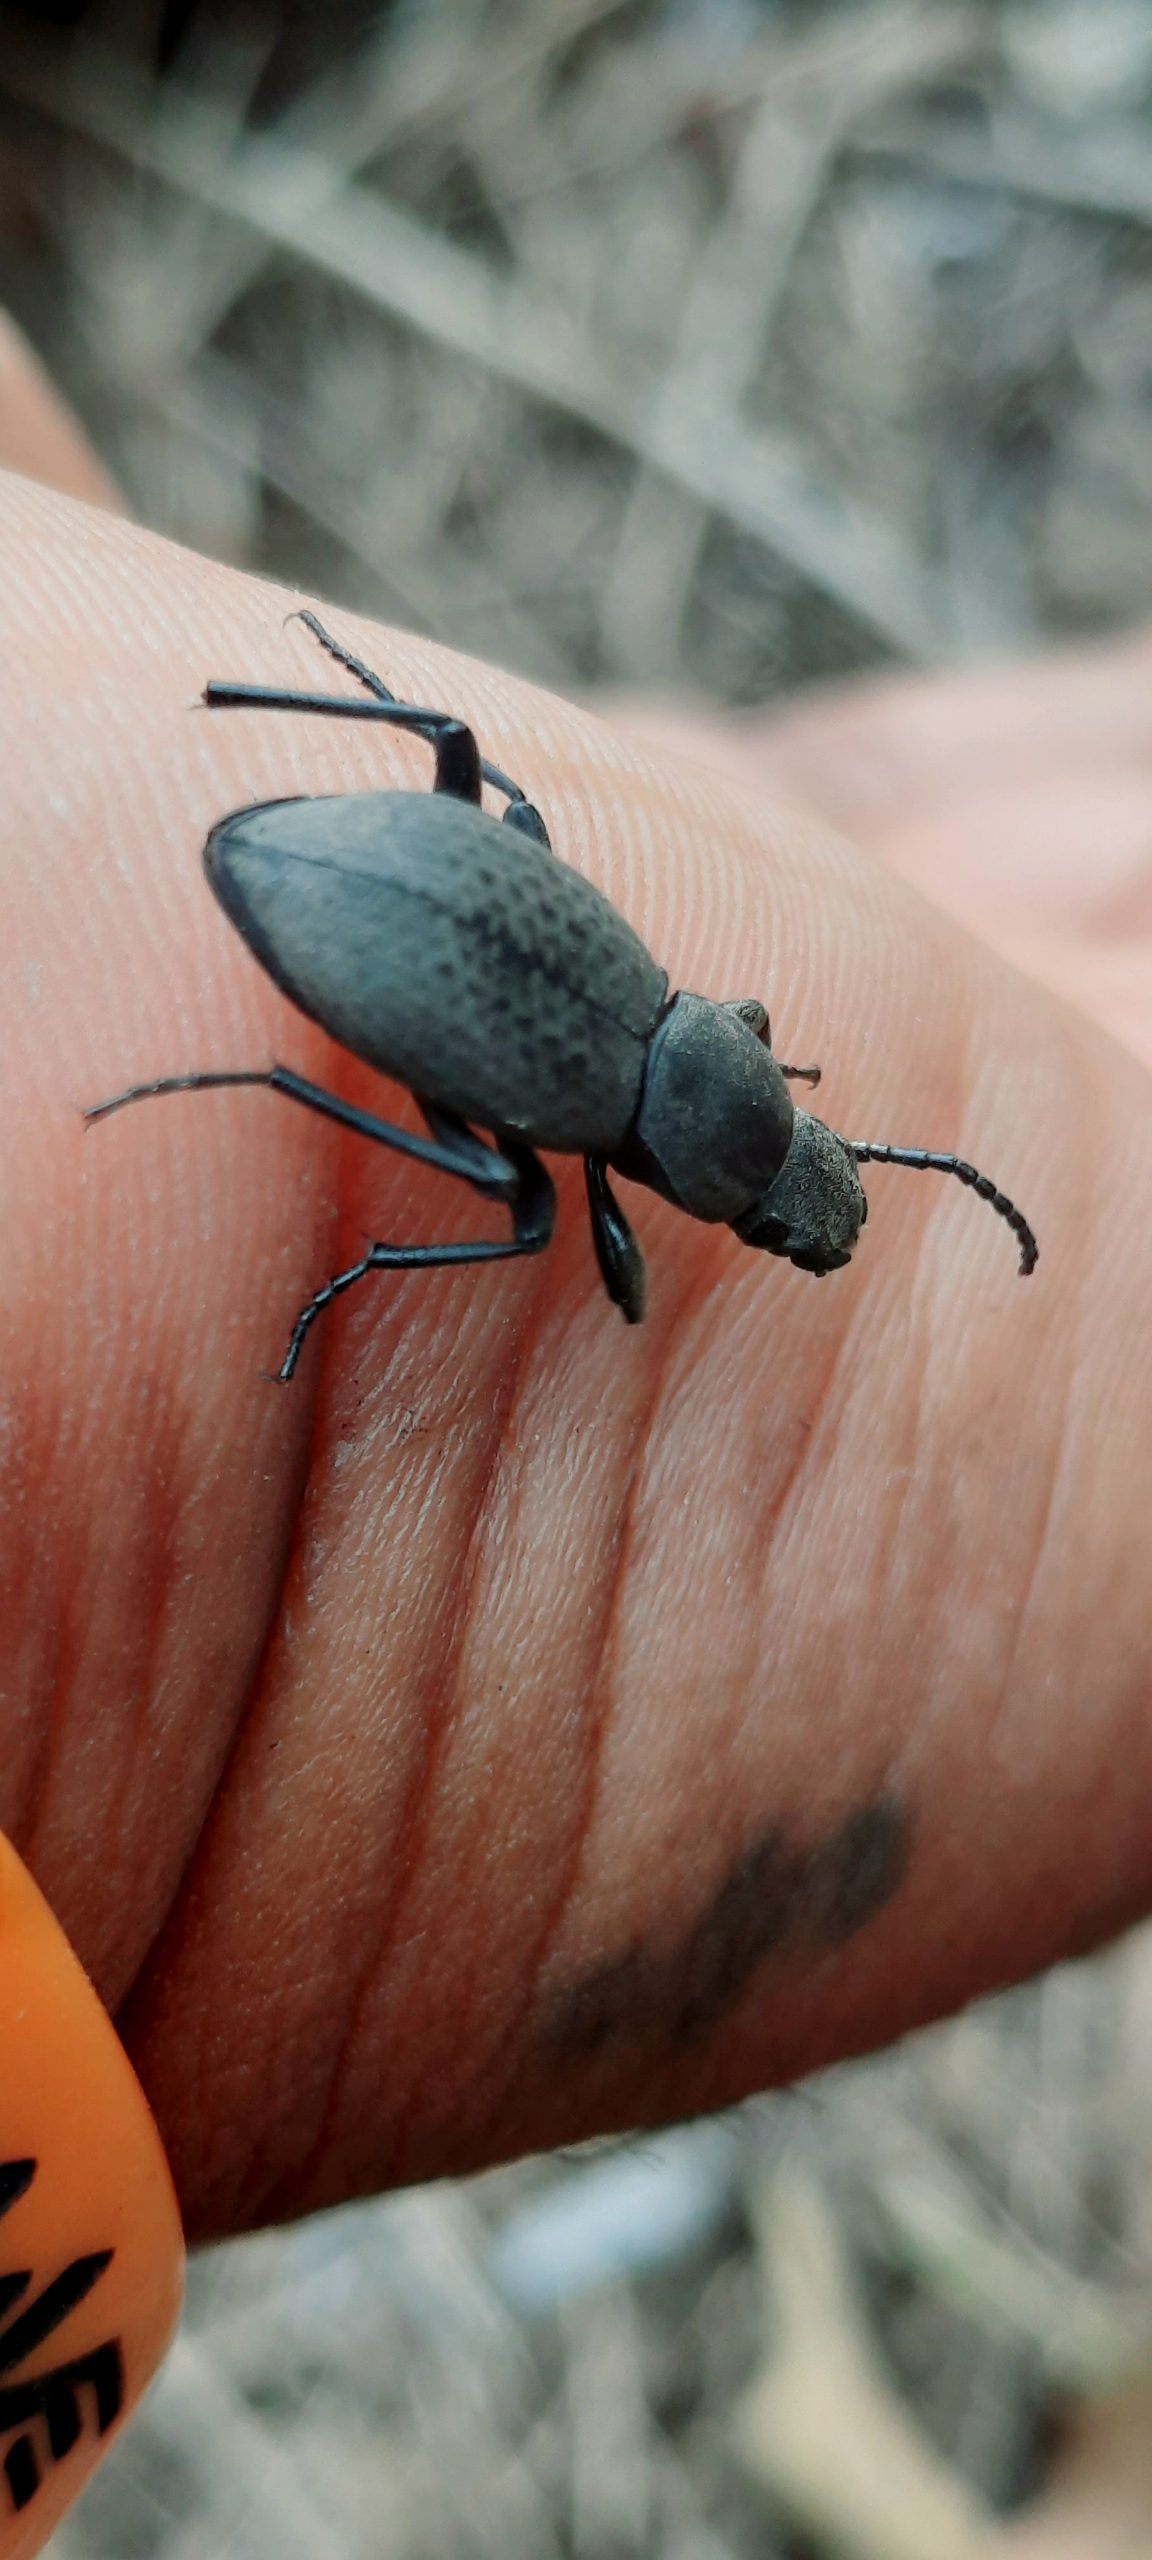 Pinacate beetle on human skin